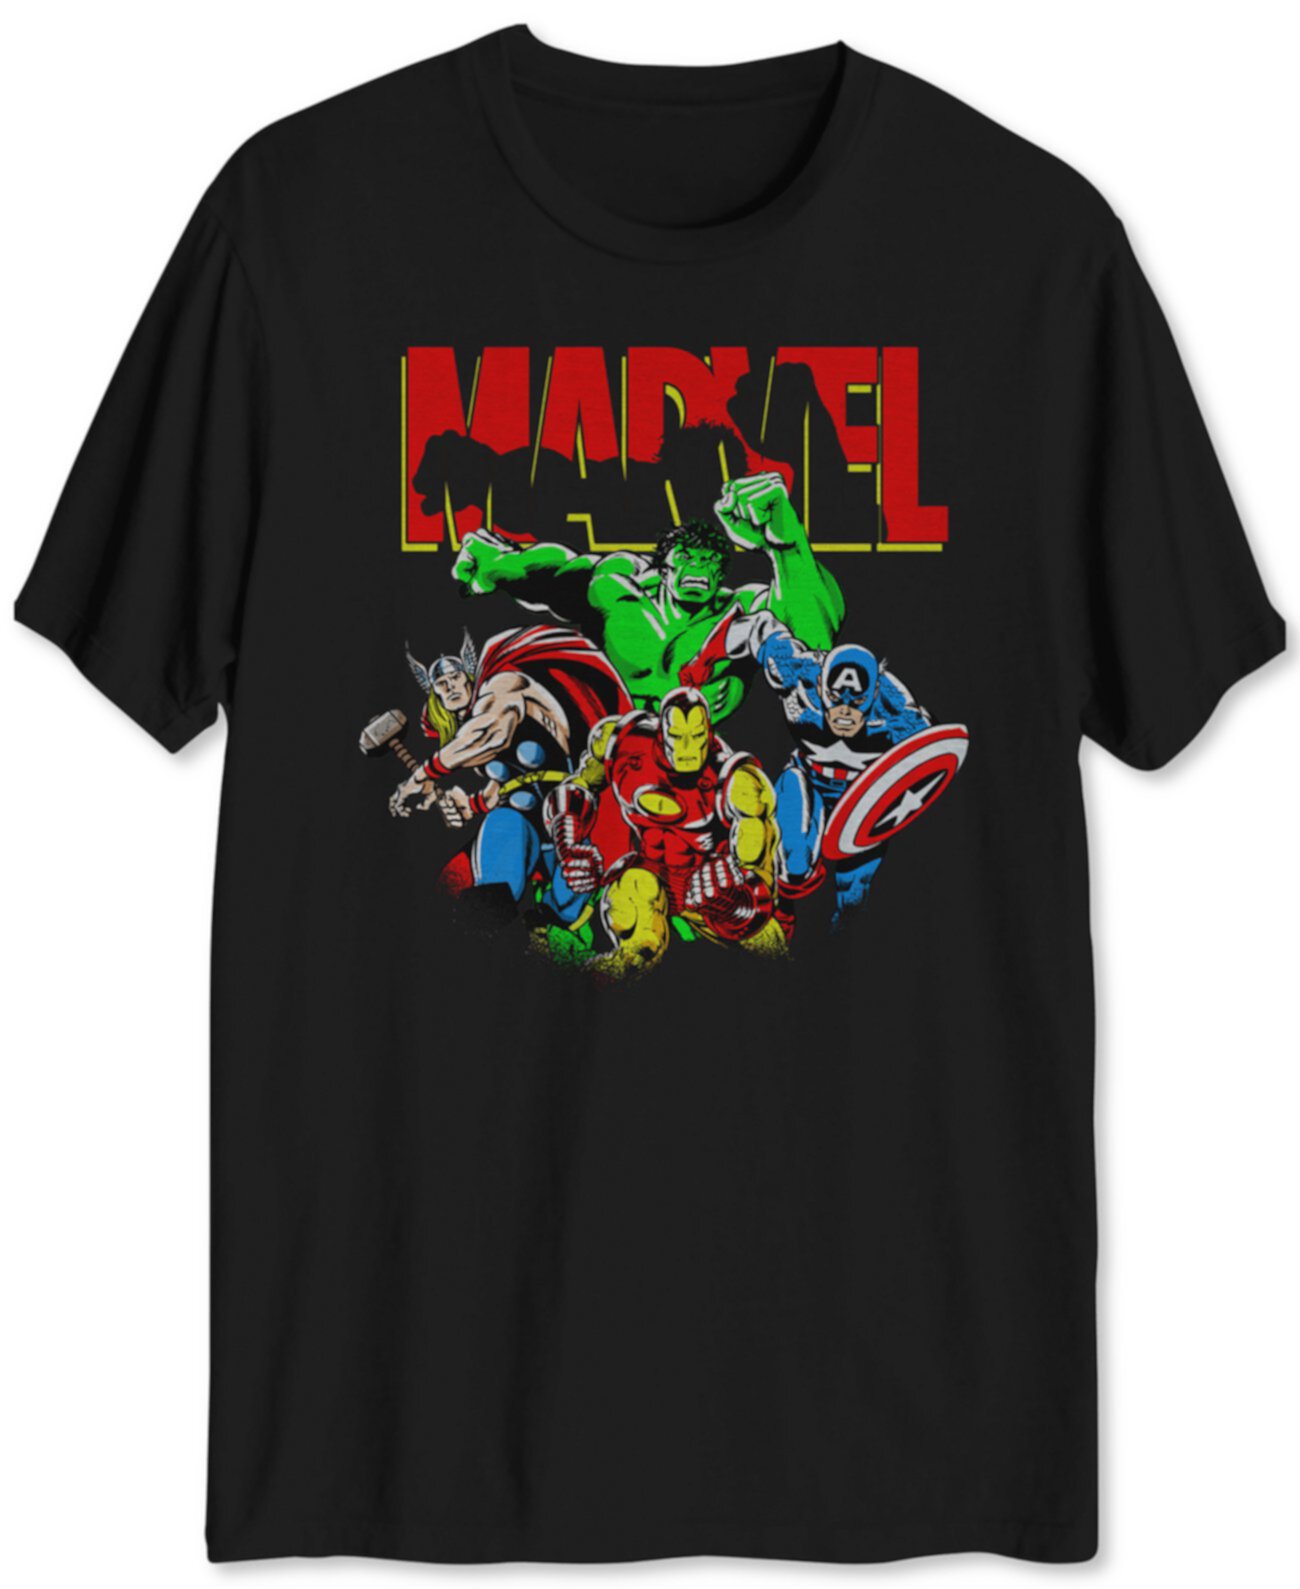 Мужская футболка с рисунком Marvel Dream Team Hybrid